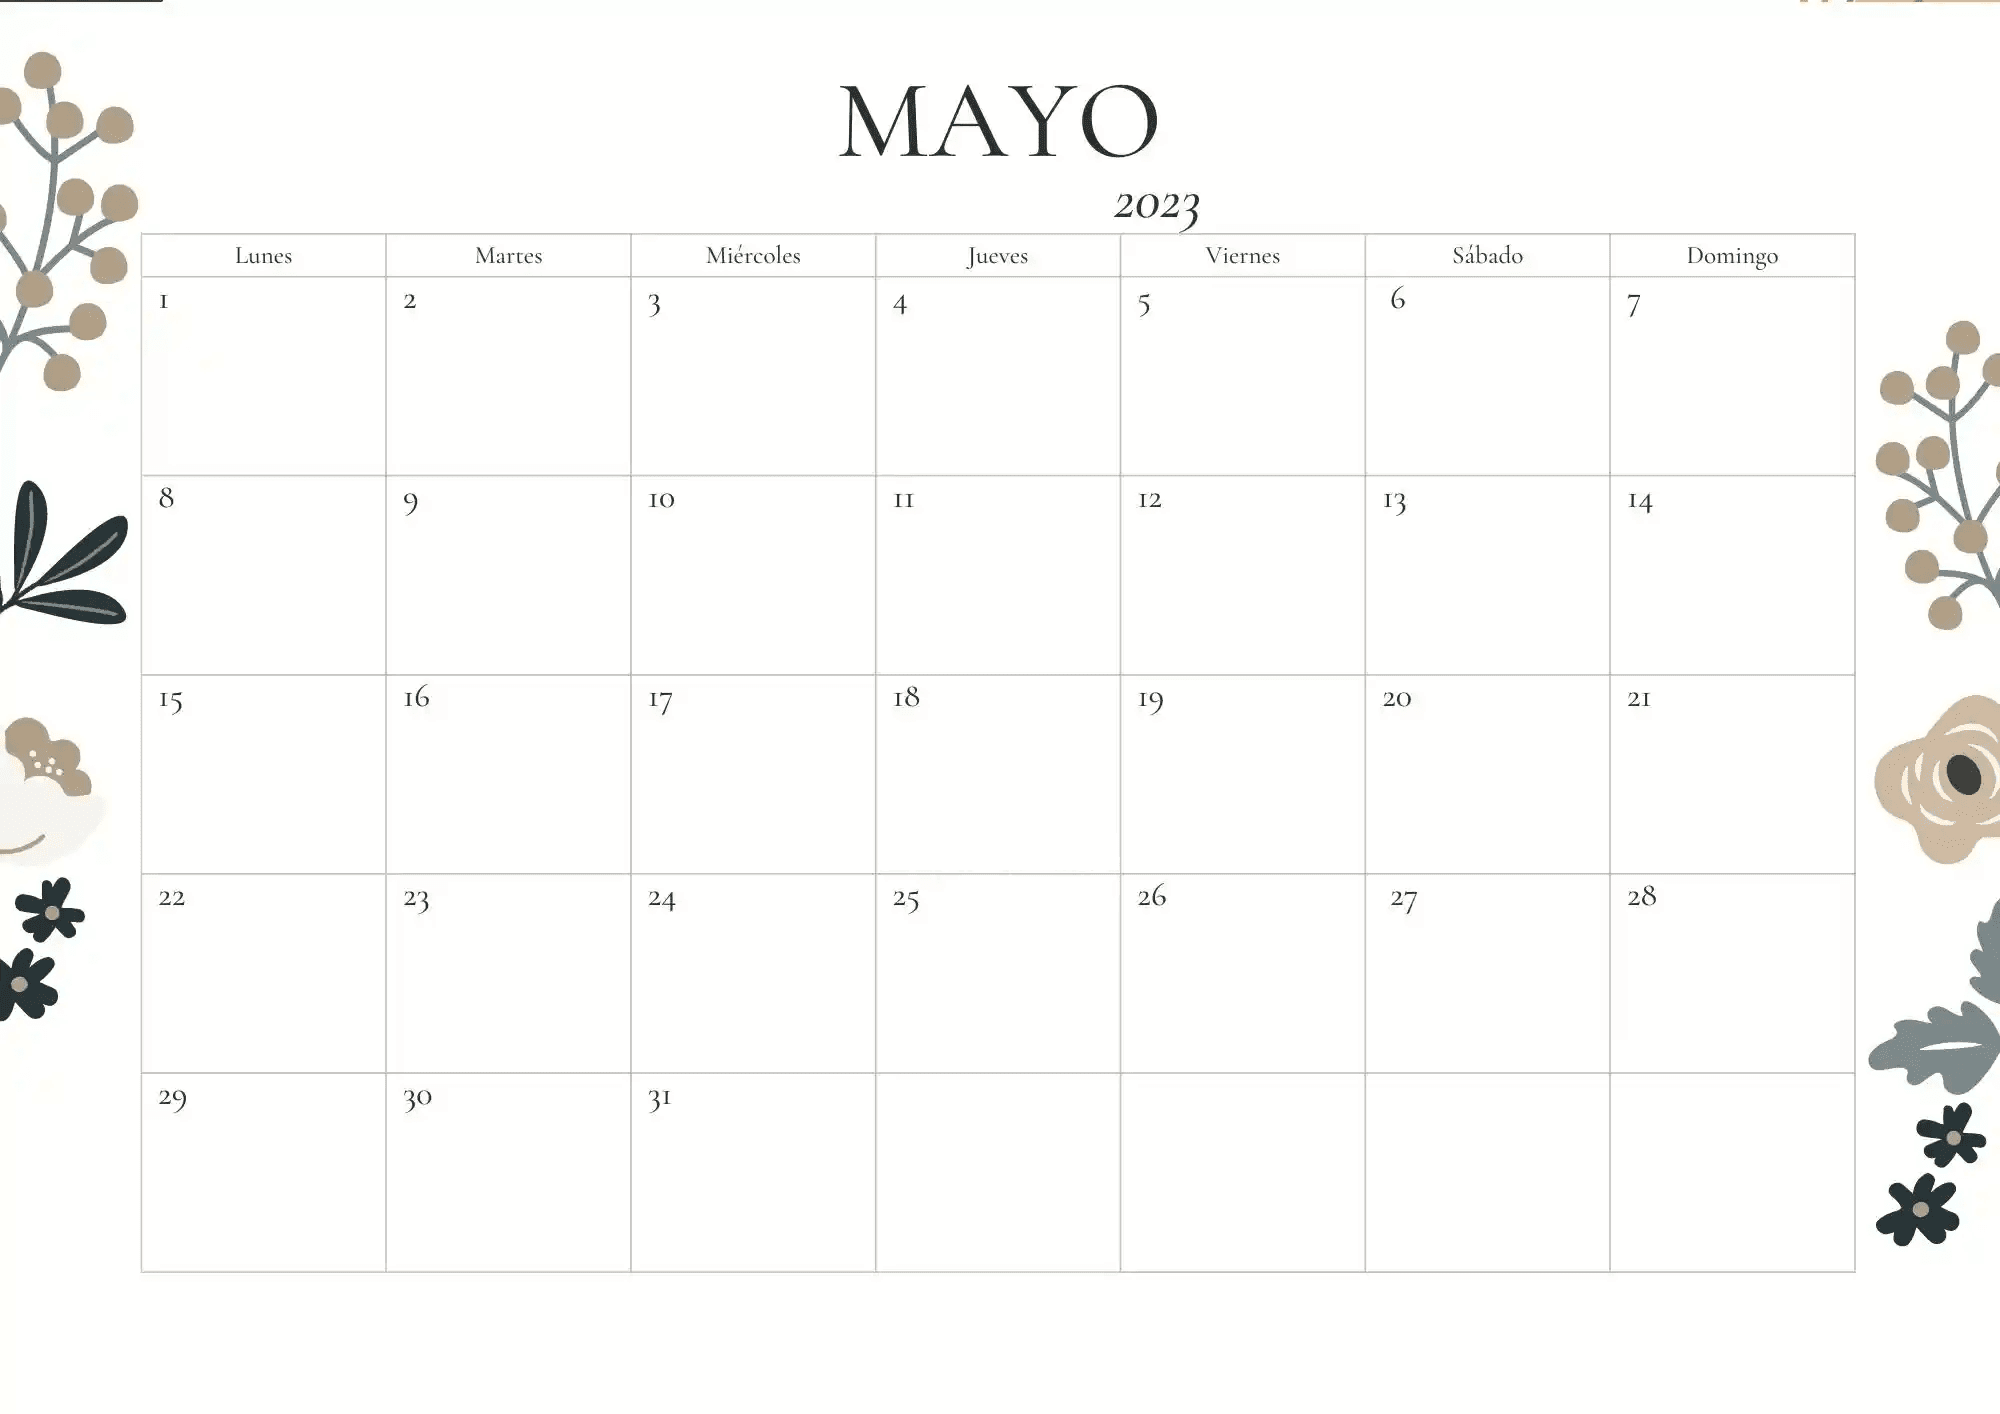 Calendario de Mayo de 2023 con fases lunares y eclipses